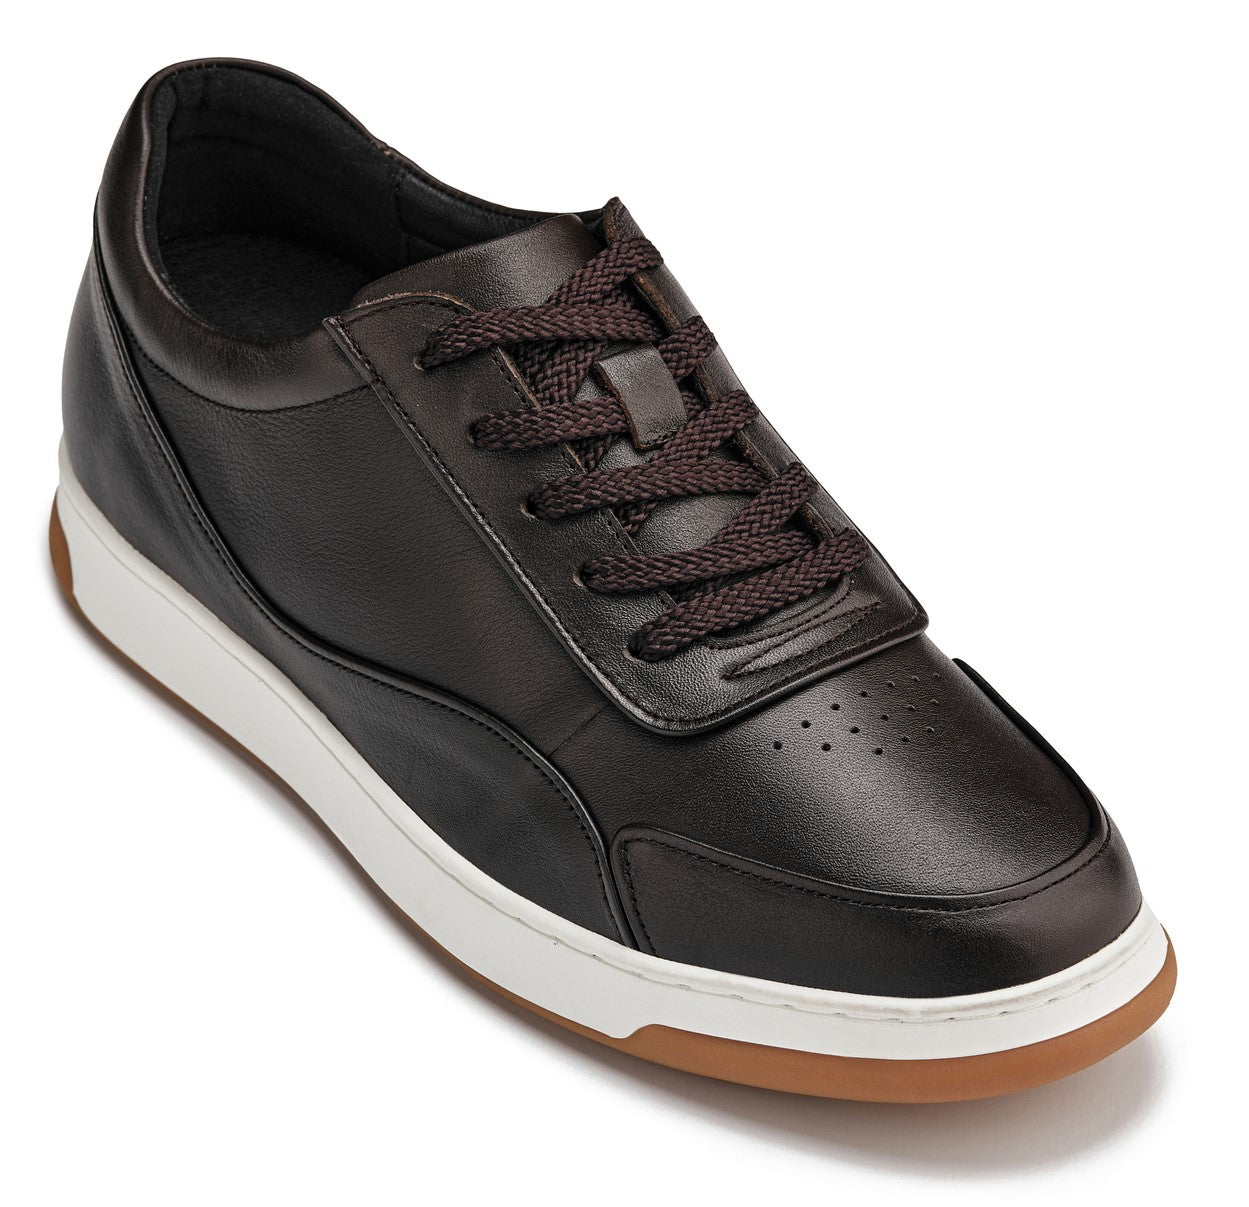 CALTO - Y7887 - 2,6 inch groter (diepe espresso/wit en gomzool) - verhoogde leren sneakers